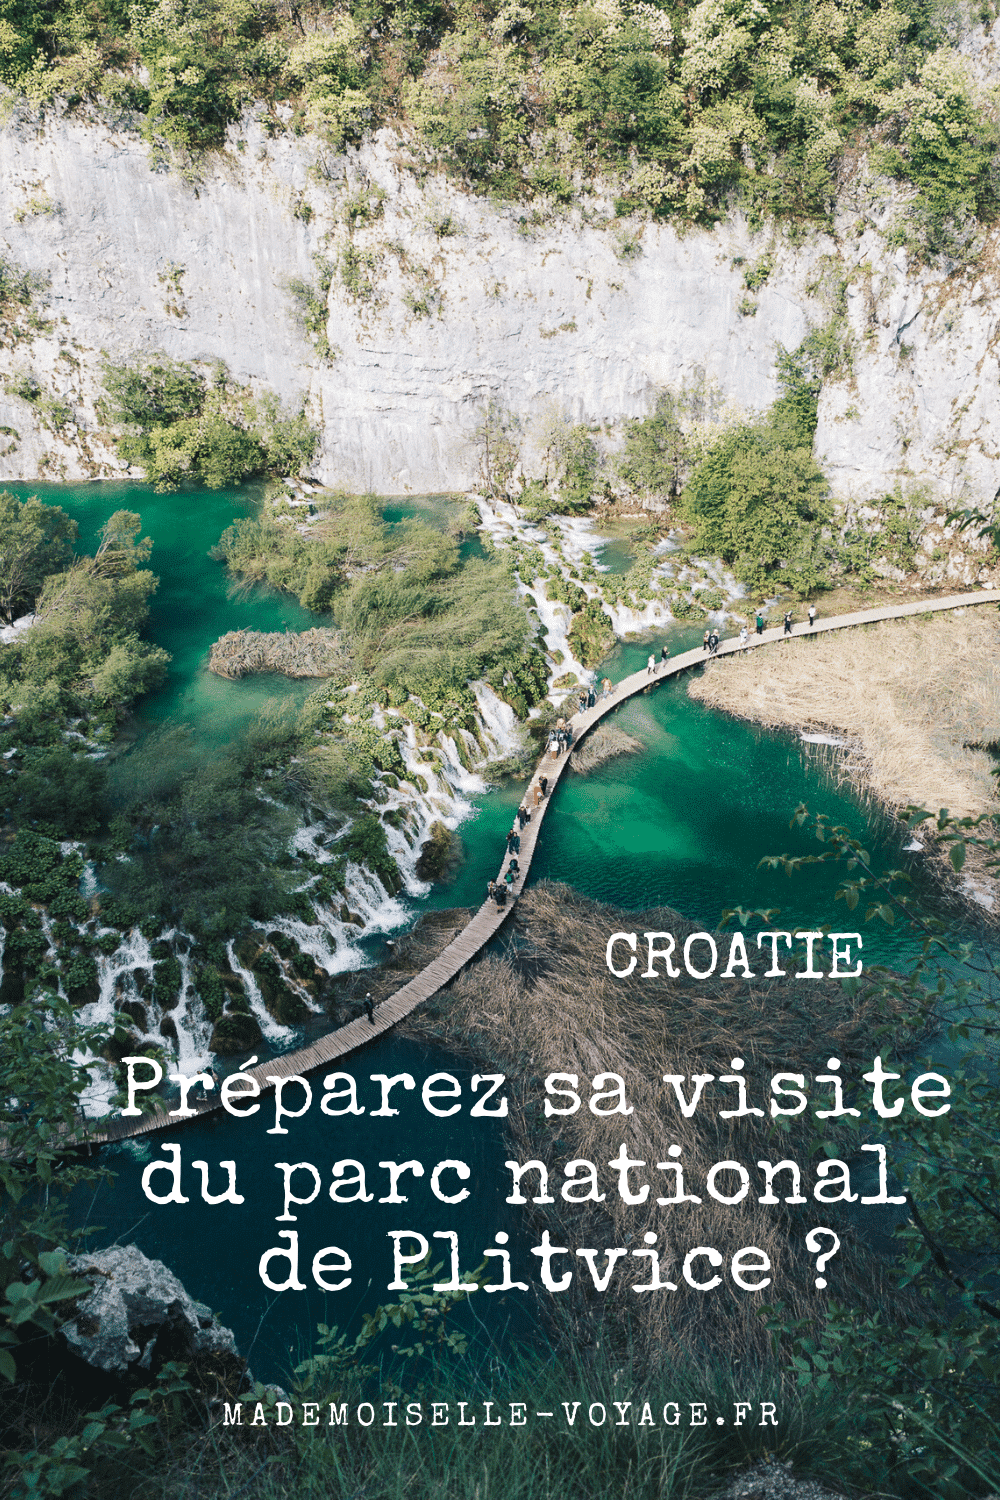 Croatie | Plitvice | conseils | vacances | séjour | mademoiselle-voyage